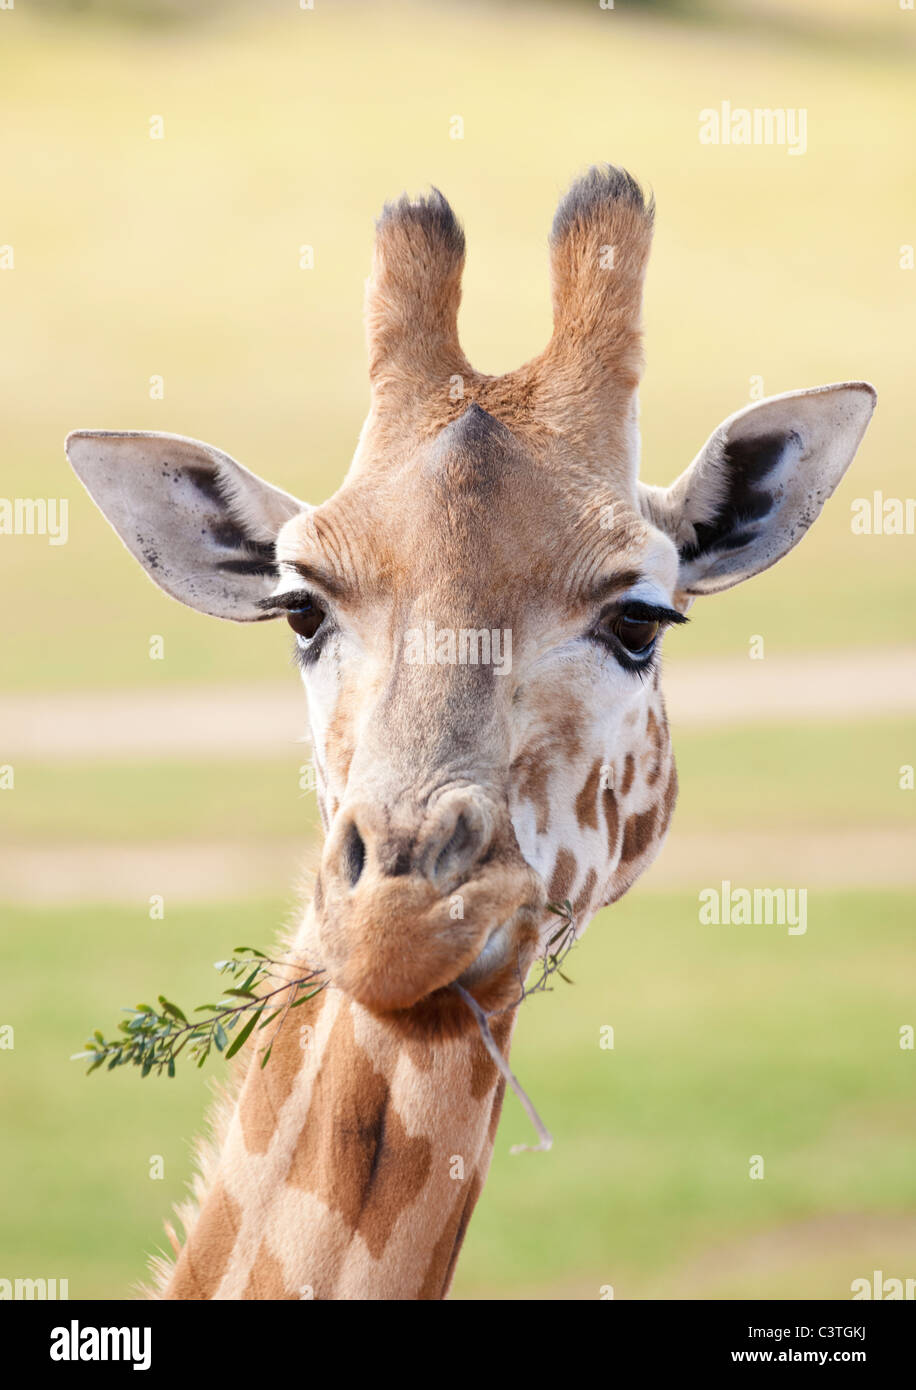 Girafe africaine dans l'environnement naturel de près Banque D'Images